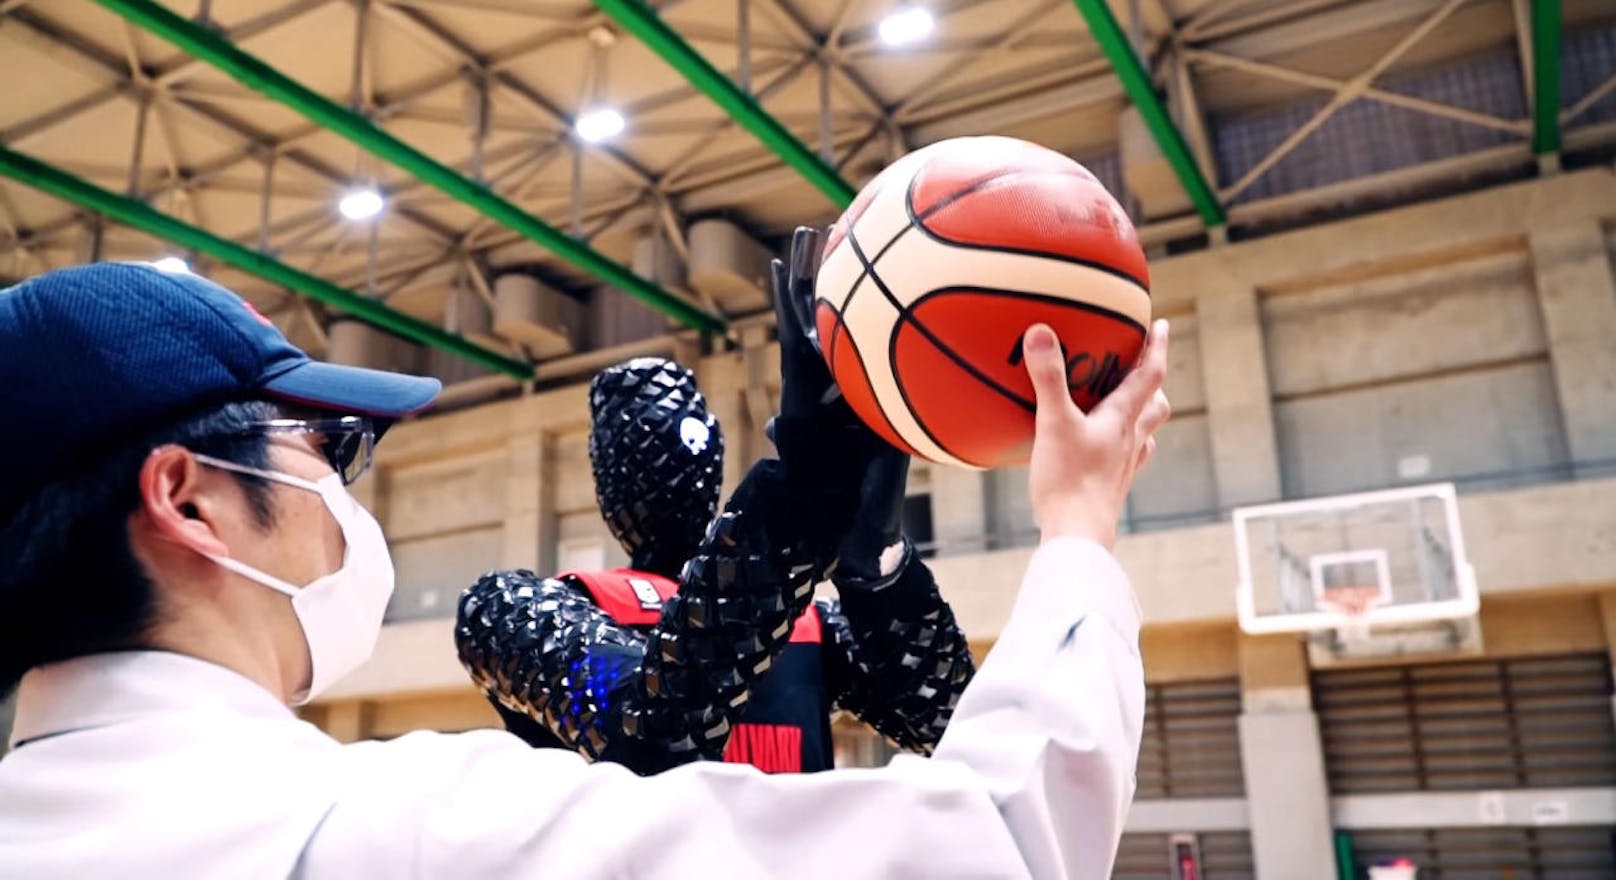 <b>21. März 2018:</b> Ein Forschungsteam von Toyota hat einen humanoiden Basketball-Roboter gebaut. Die Maschine wurde auf den Namen CUE getauft. Der Roboter wurde mit einer künstlichen Intelligenz trainiert. Die Entwickler behaupten, dass der Roboter eine nahezu perfekte Trefferquote habe. Um das zu beweisen, ließen sie die Maschine gegen zwei Profi-Basketballspieler aus Japan antreten. Diese hatten keine Chance. Wäre es allerdings ein richtiges Spiel gewesen, so wäre das Ergebnis anders gewesen. CUE kann sich nämlich nicht bewegen und nur stationär die Bälle versenken. <a href="https://www.youtube.com/watch?v=rlZReGFm53U" target="_blank">Hier geht es zum Video</a>